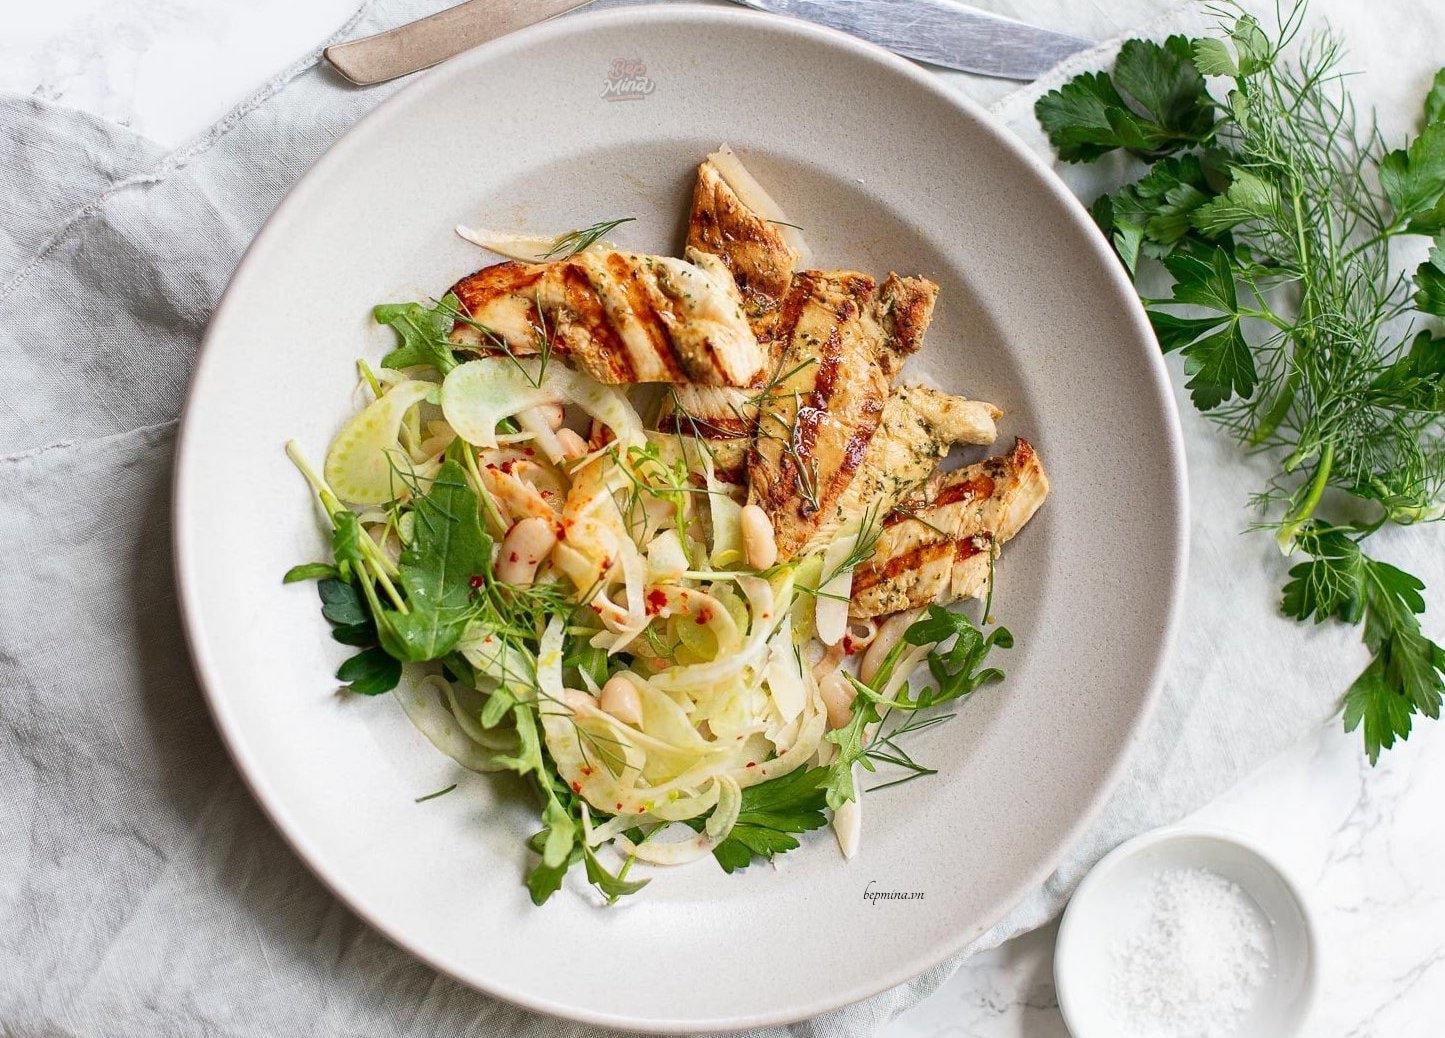 Bạn có thể thay thế ức gà bằng loại thịt nào khác trong salad giảm cân?
